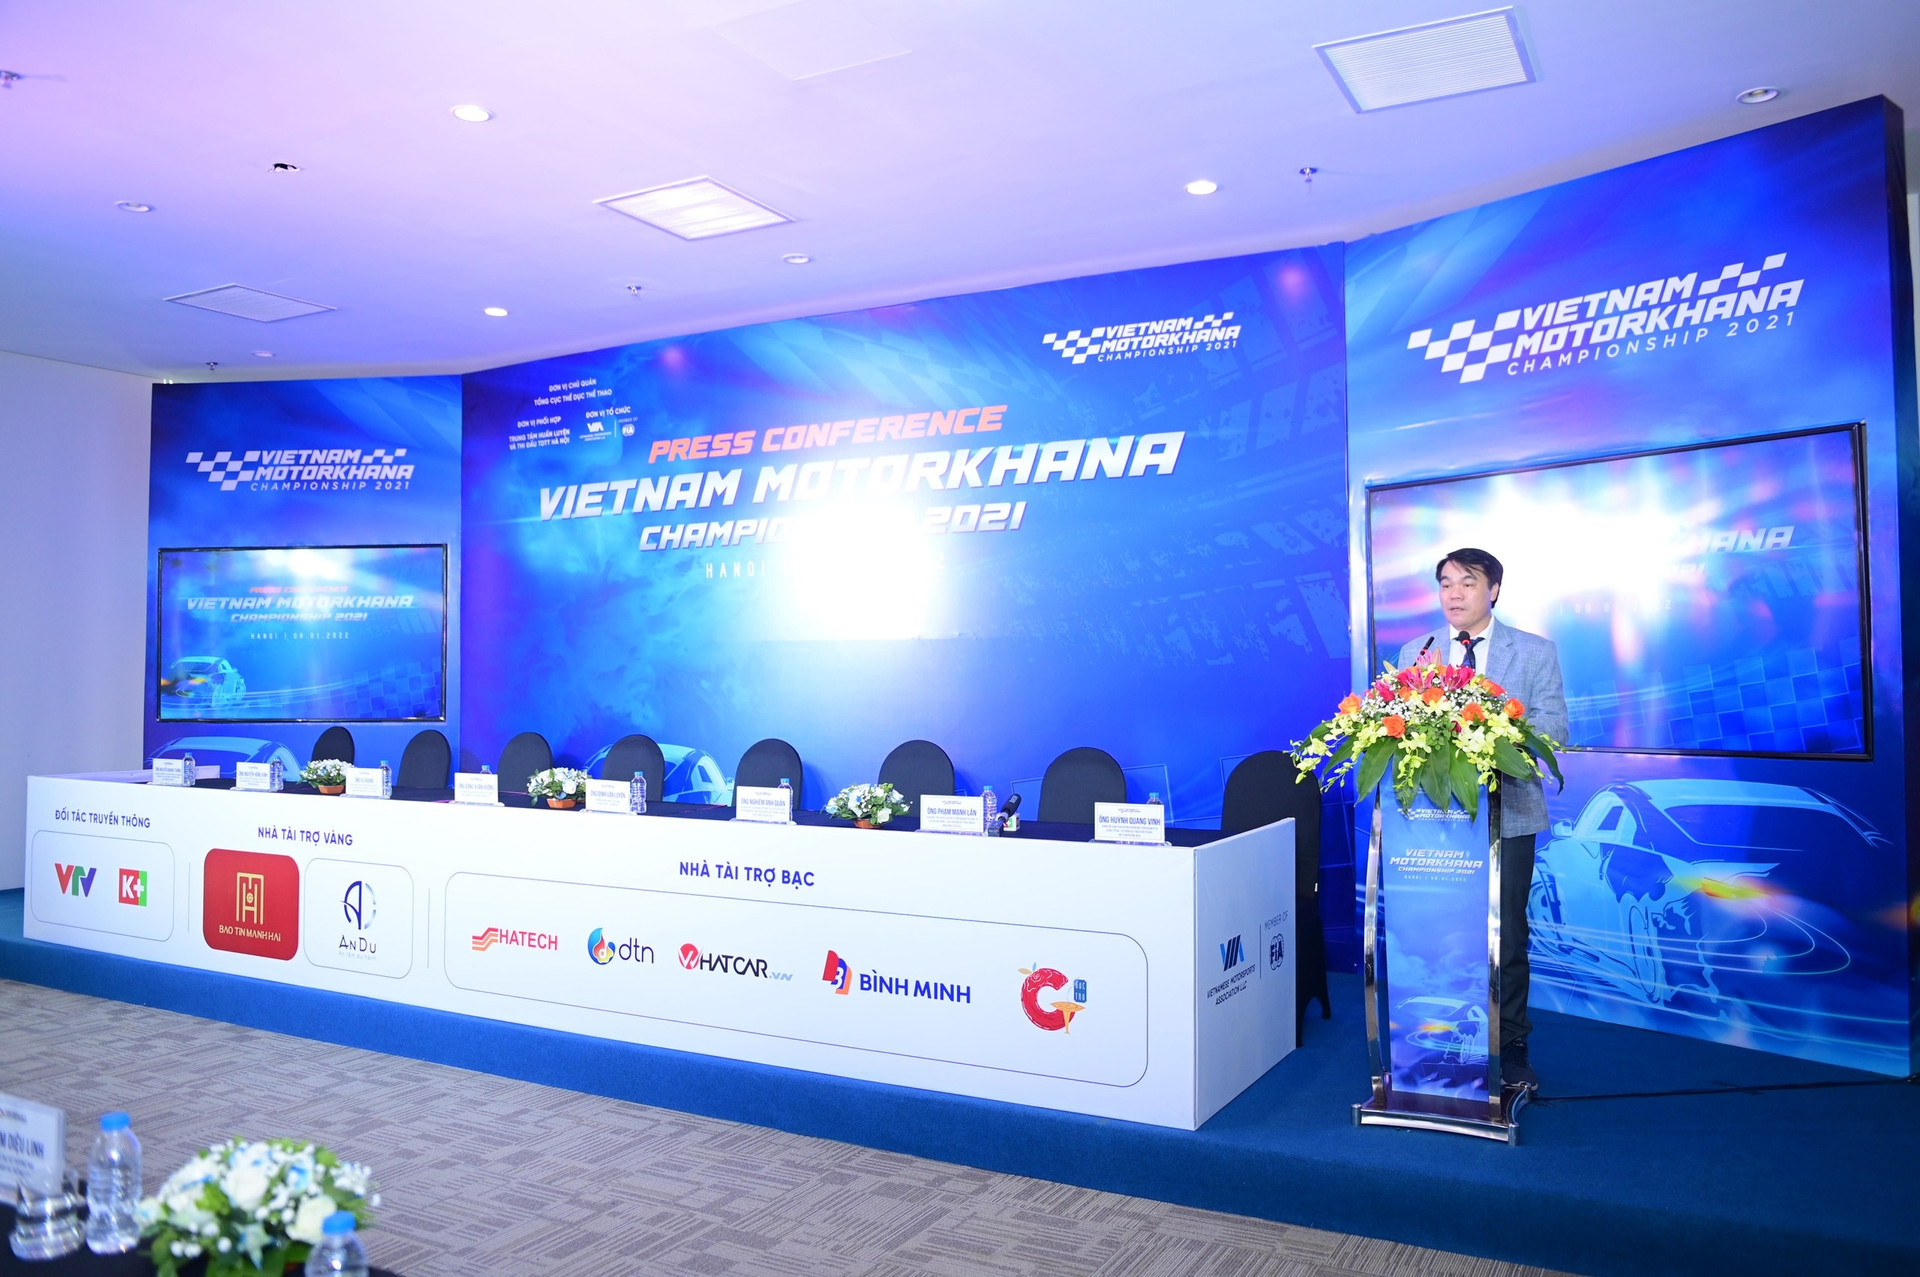 Ông Đinh Văn Luyến - Trưởng phòng quản lý thể dục thể thao, Sở Văn hoá Thể thao Hà Nội - phát biểu trong lễ ra mắt giải vô địch Motorkhana 2021.